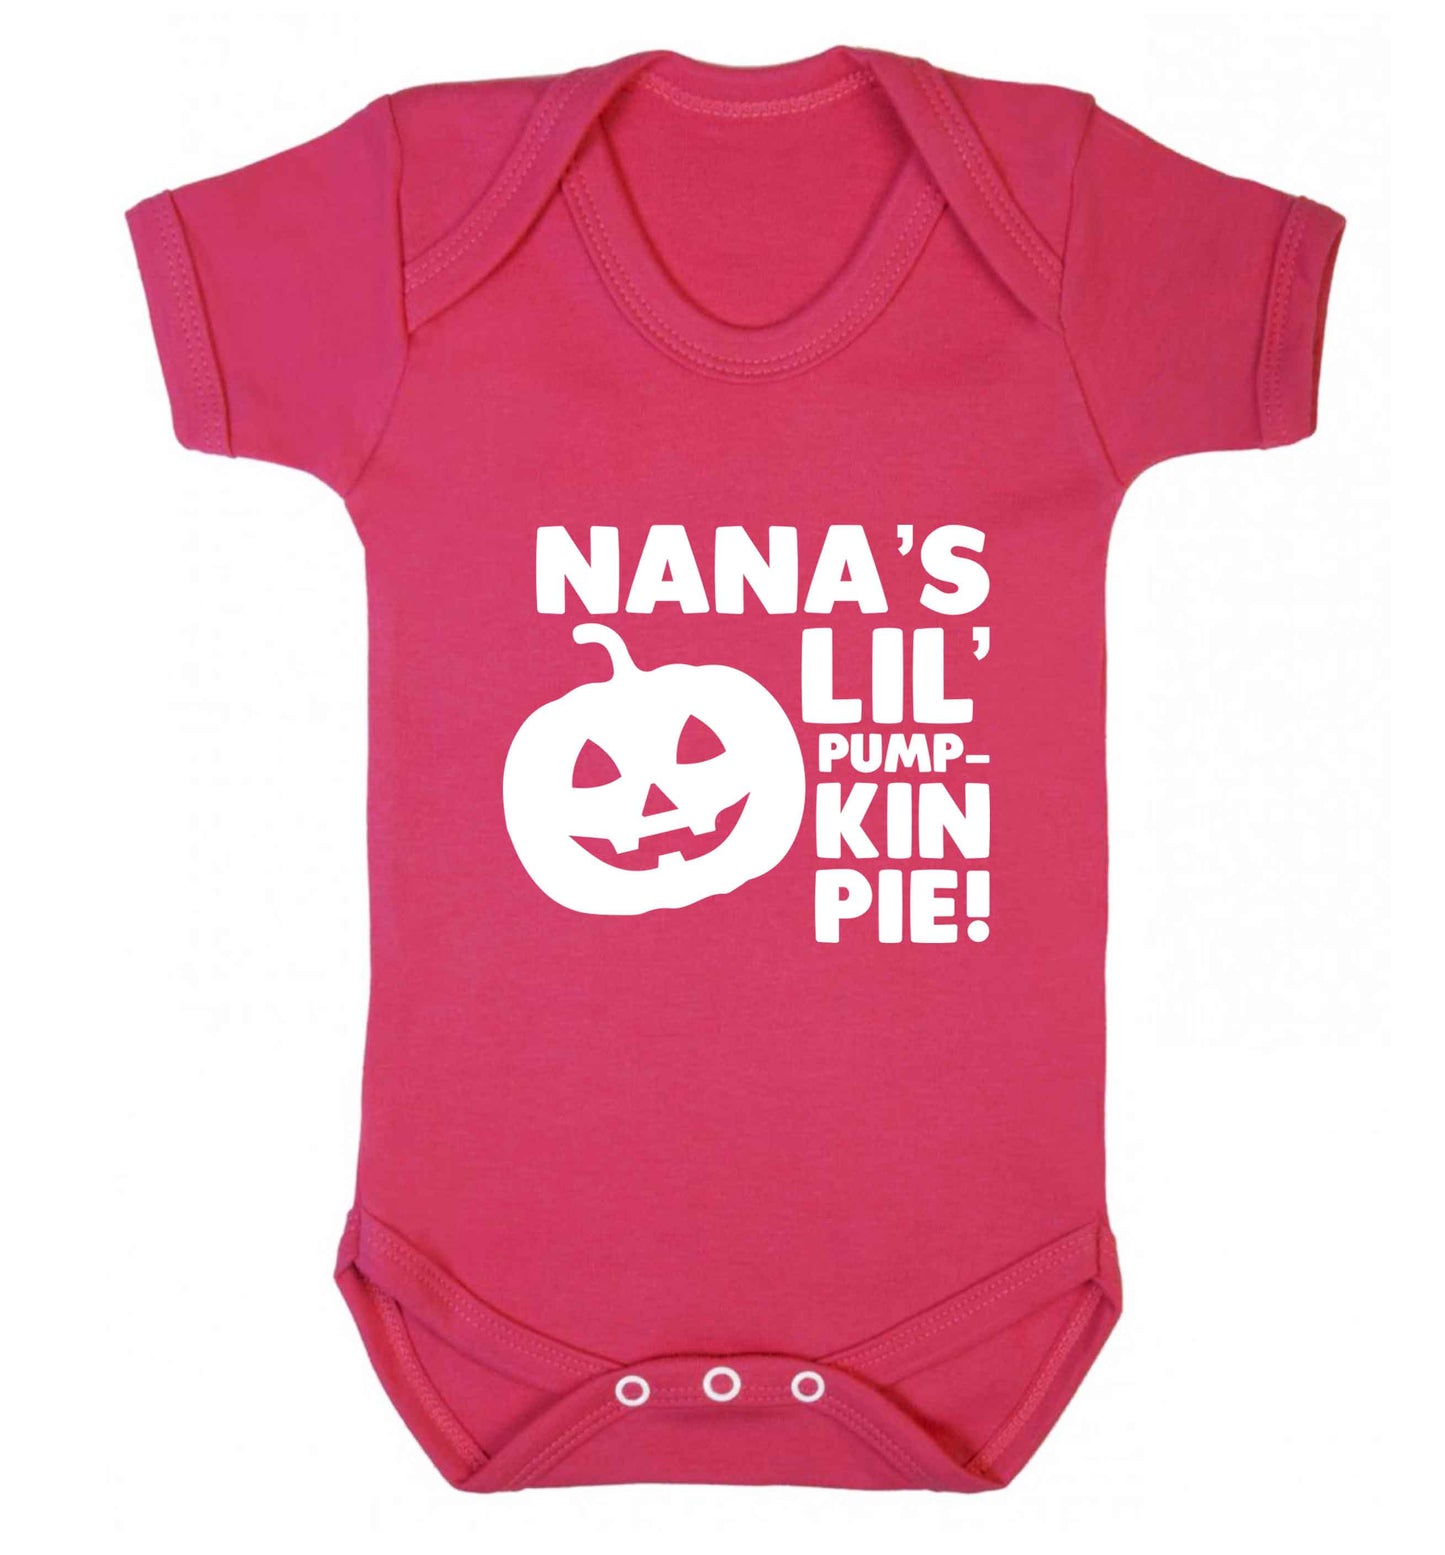 Nana's lil' pumpkin pie baby vest dark pink 18-24 months